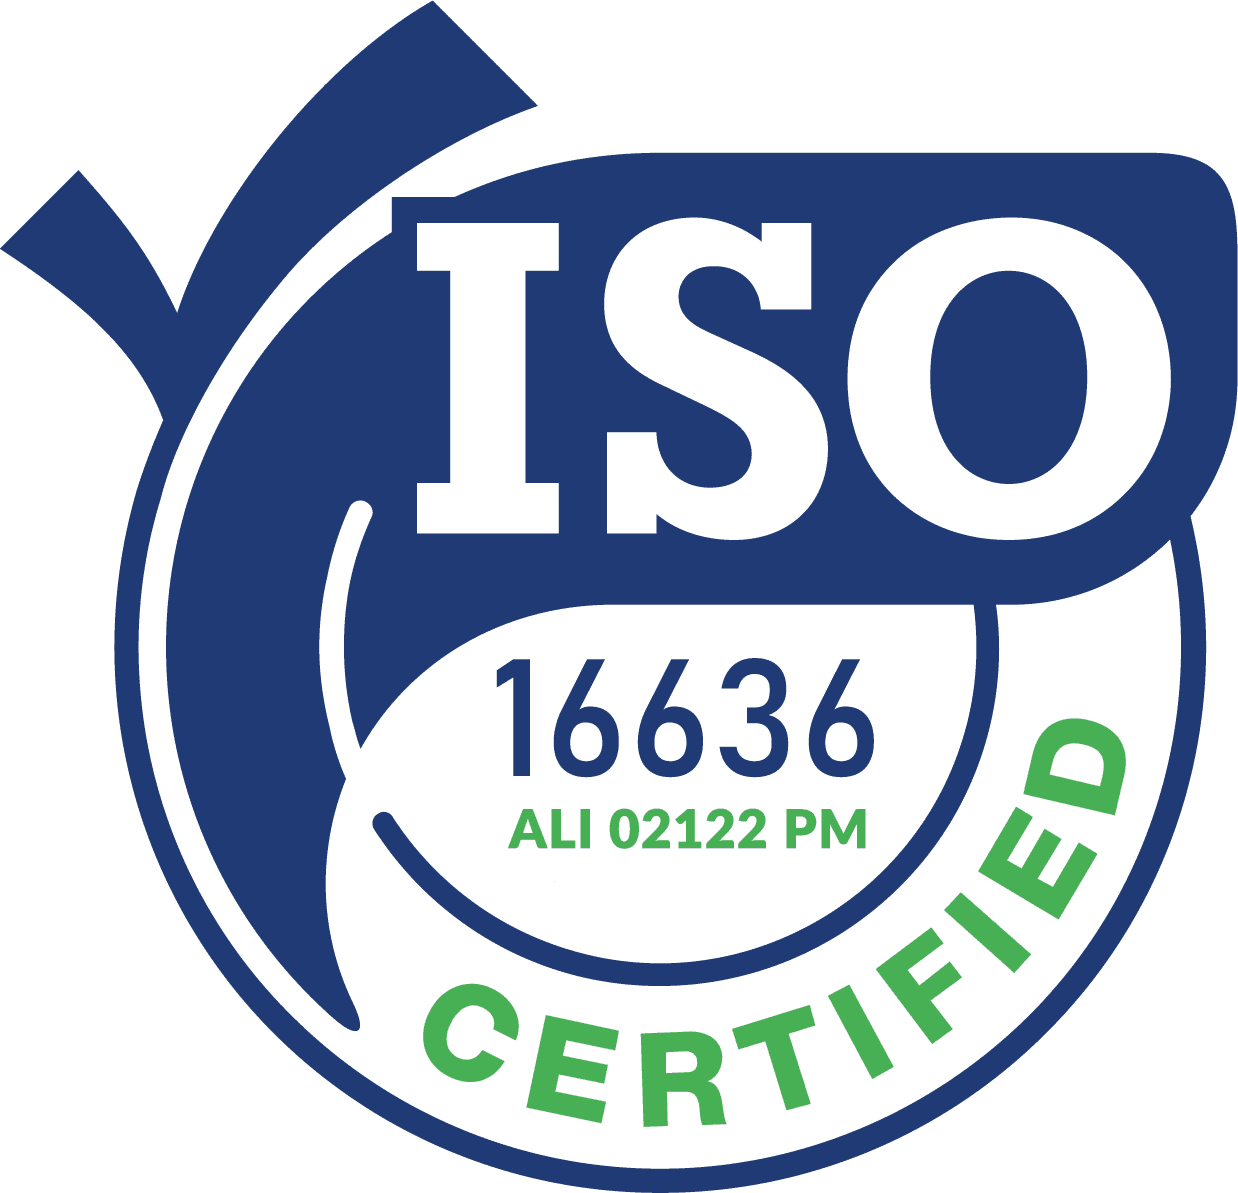 La BioDisinfestazione certificata ISO 16636